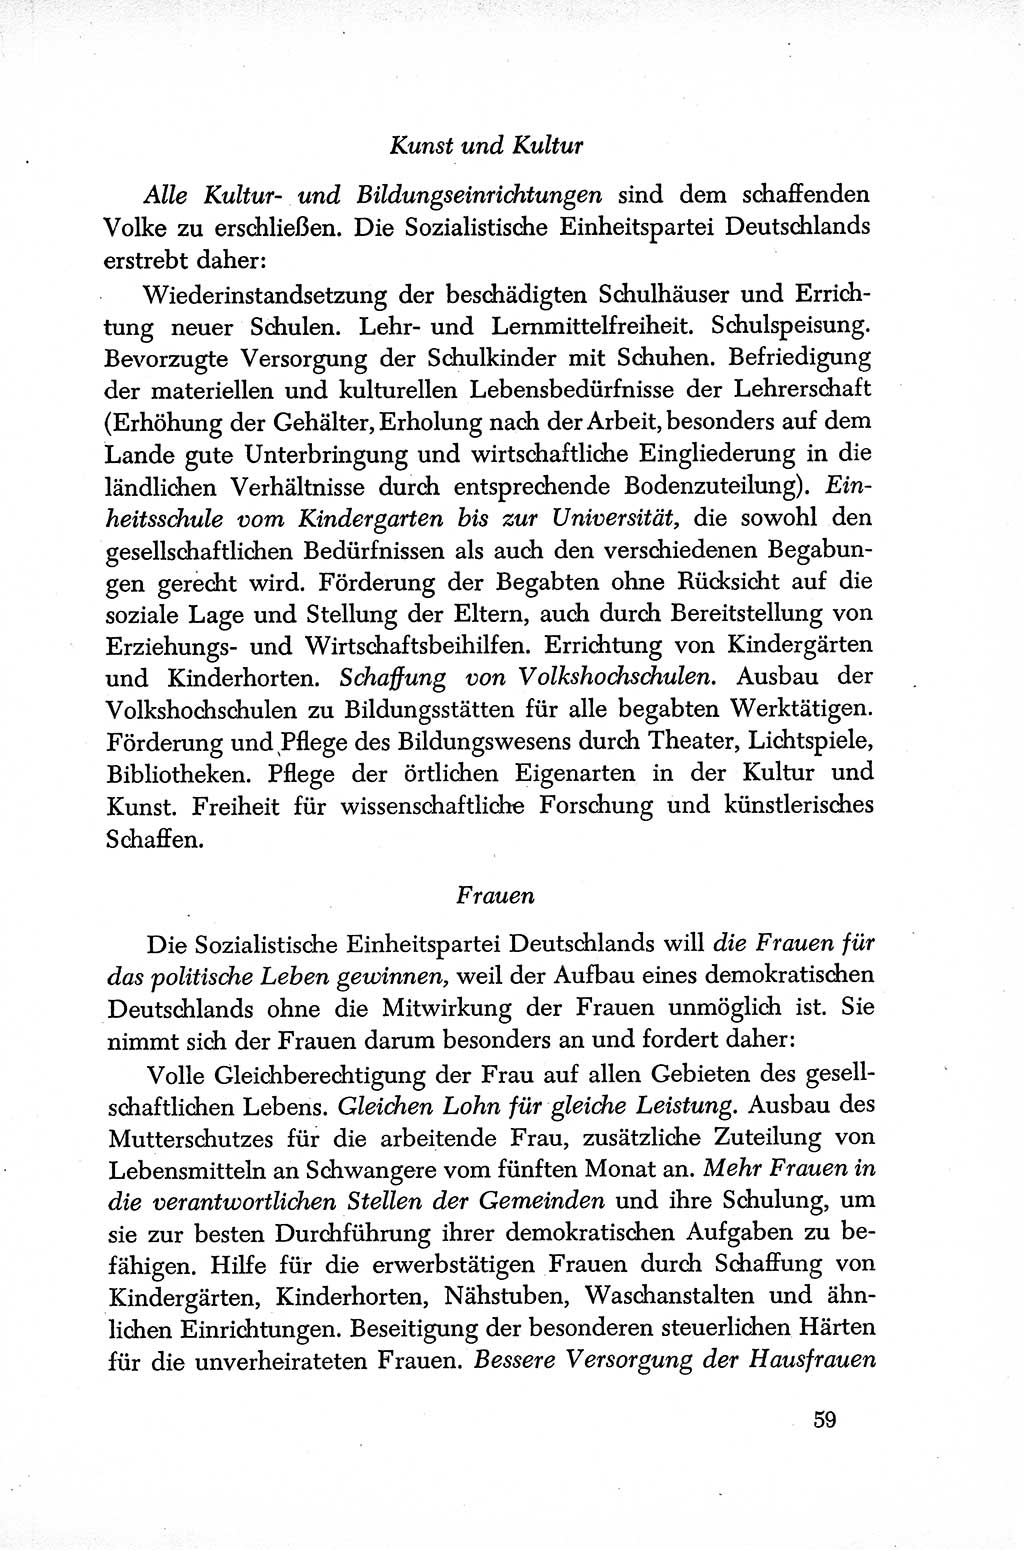 Dokumente der Sozialistischen Einheitspartei Deutschlands (SED) [Sowjetische Besatzungszone (SBZ) Deutschlands] 1946-1948, Seite 59 (Dok. SED SBZ Dtl. 1946-1948, S. 59)